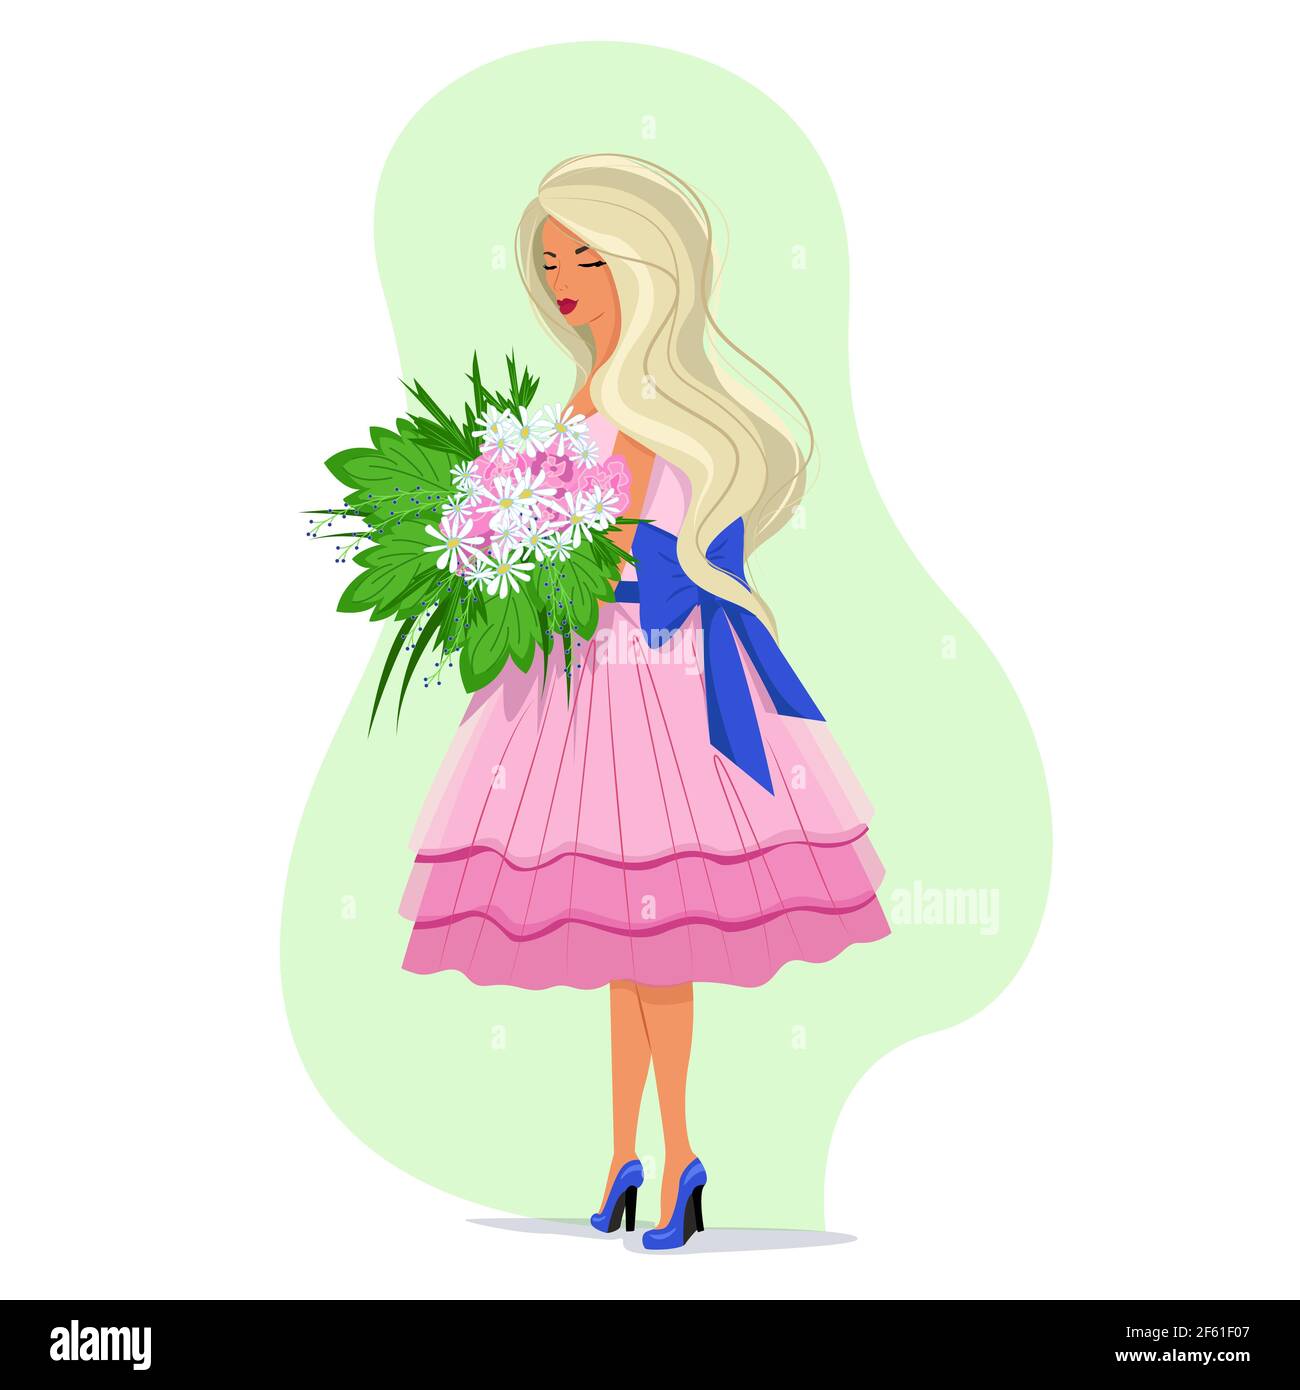 Fille dans une robe rose tenant un bouquet luxuriant de pâquerettes dans ses mains, cheveux blonds longs flittering dans le vent, vecteur dans le style plat, printemps mignon Illustration de Vecteur